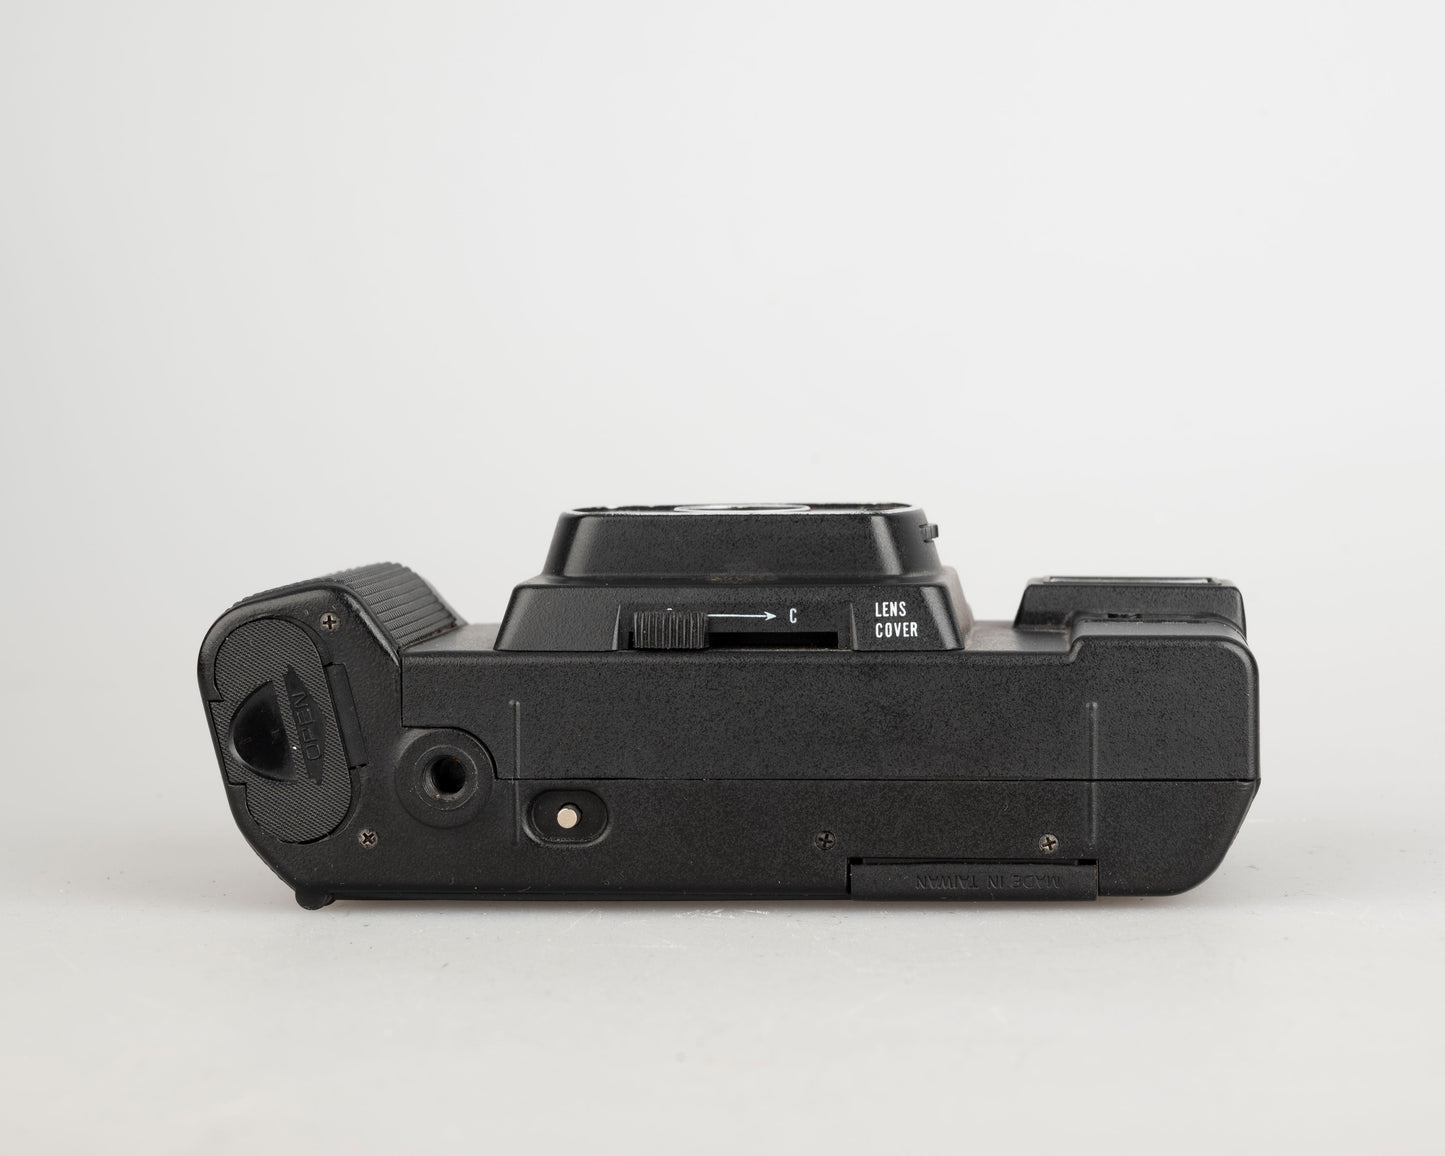 Argus C-200 35mm camera